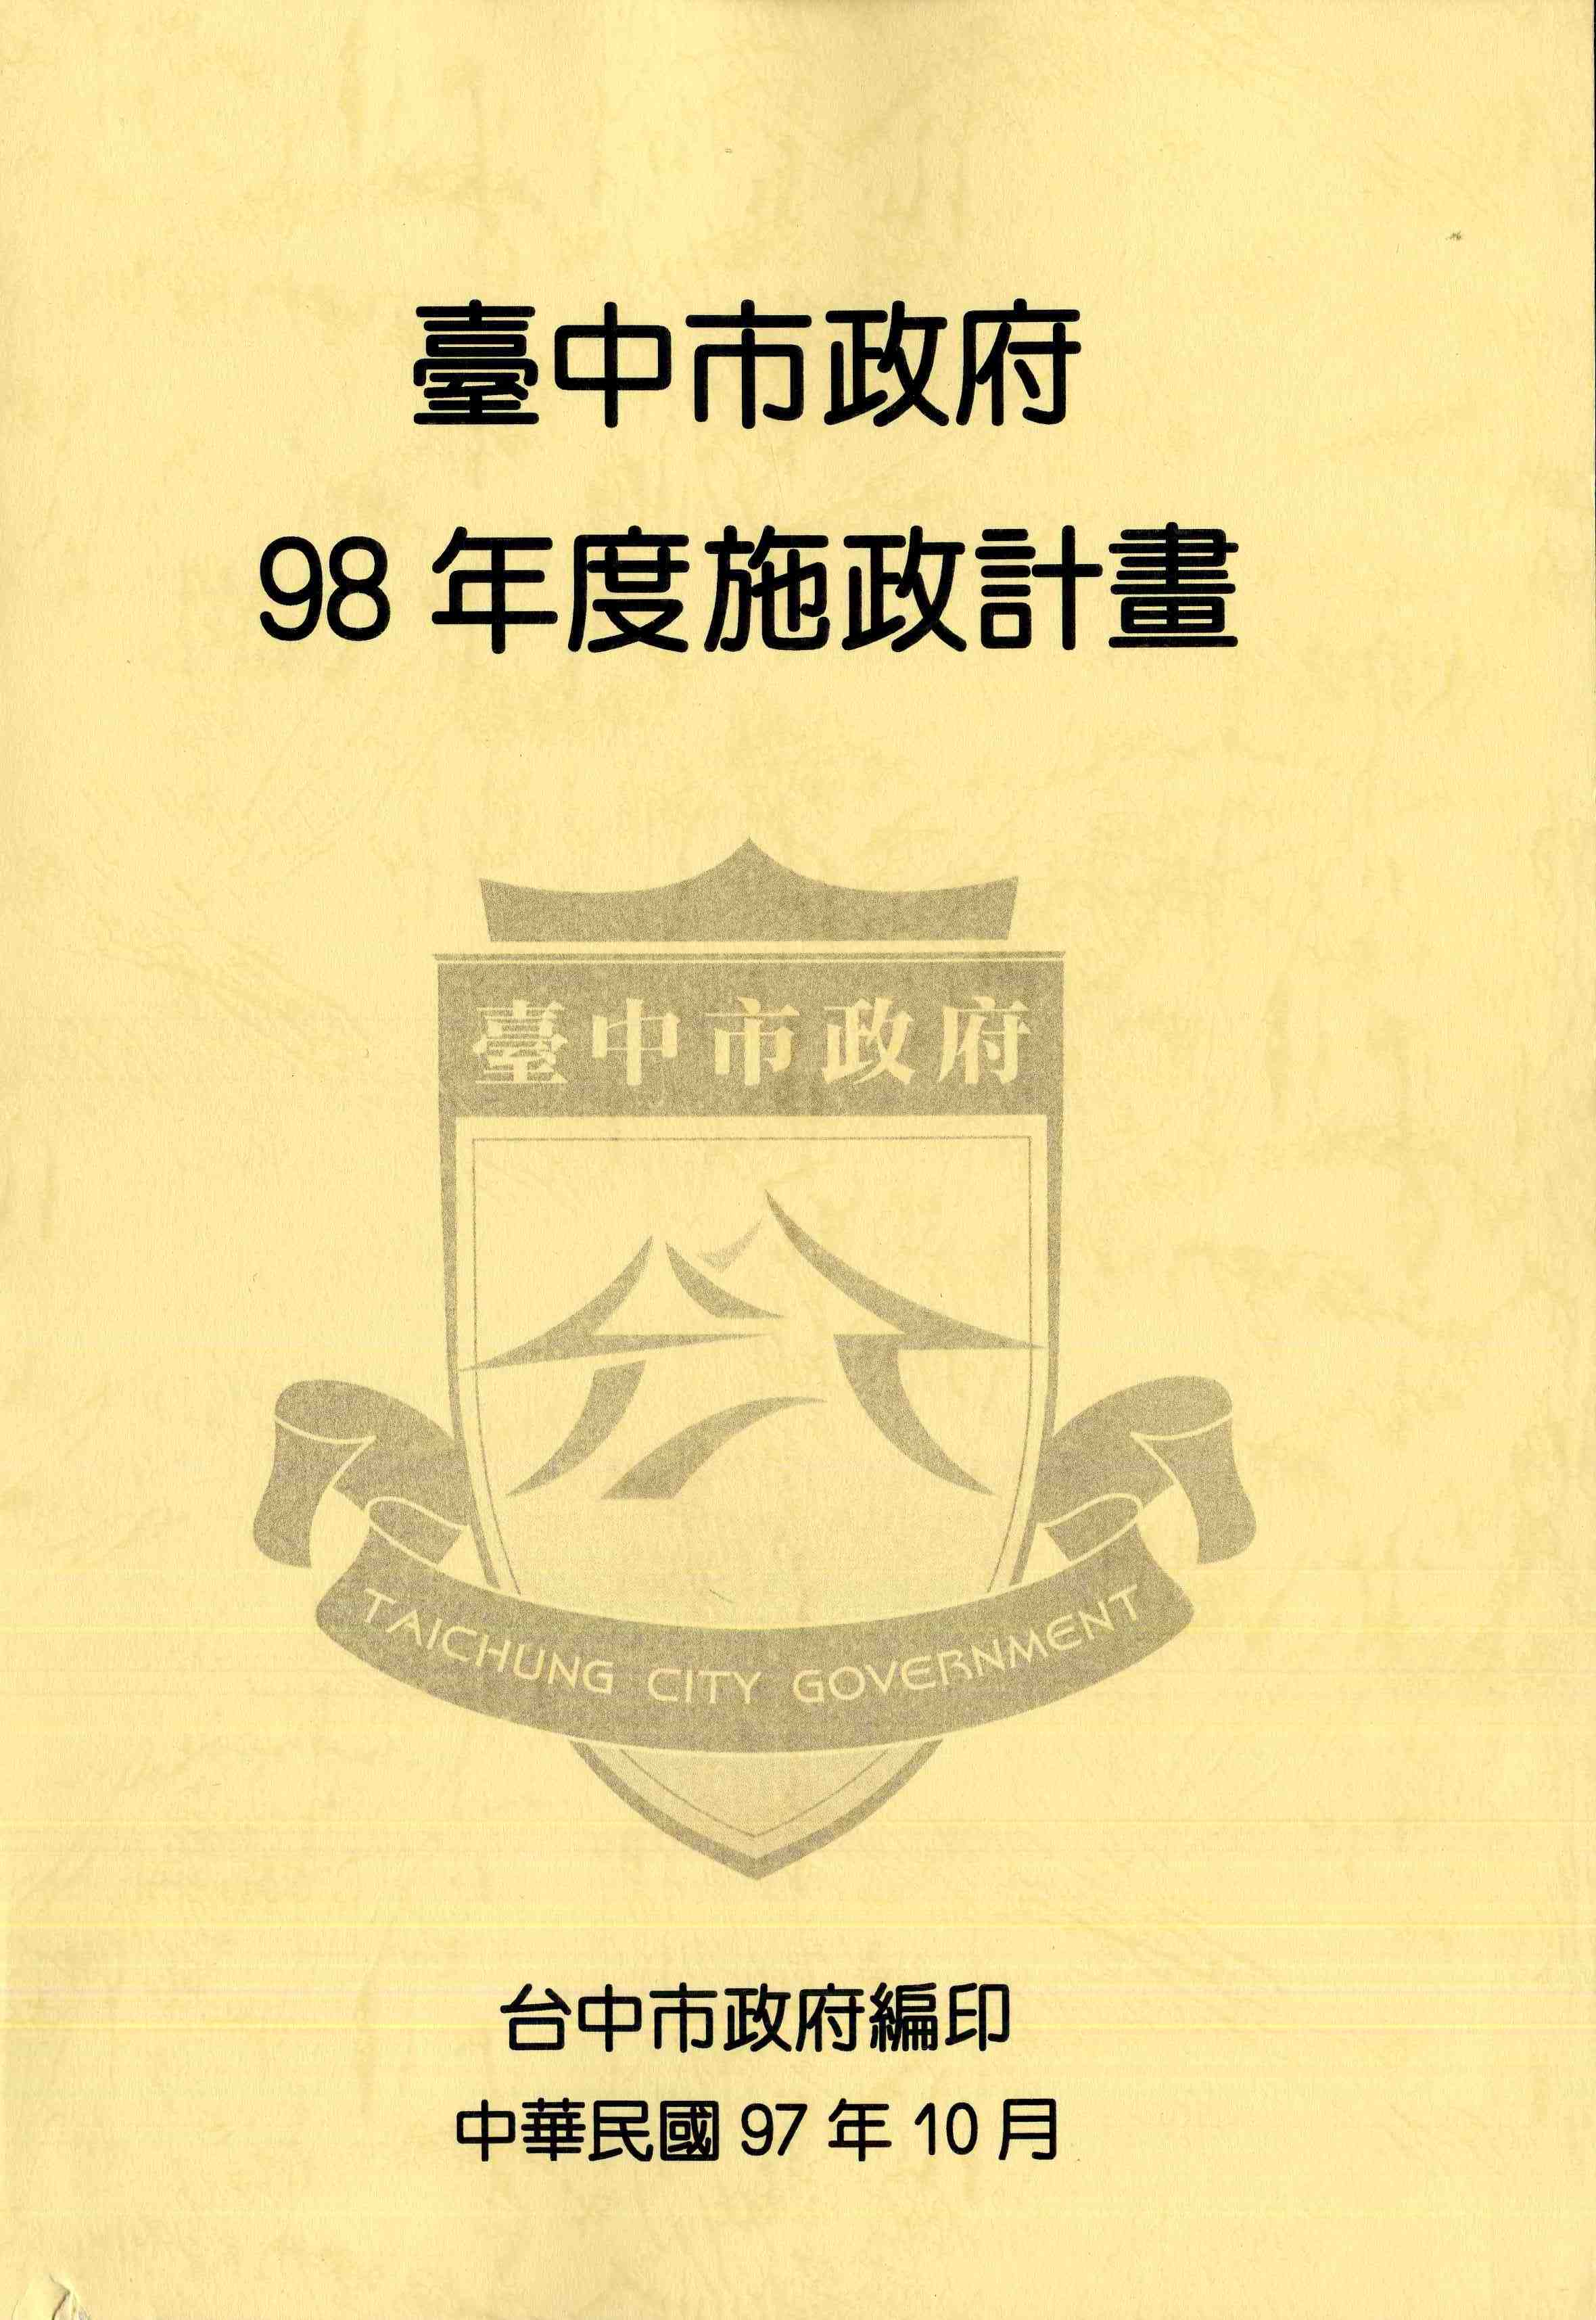 臺中市政府98年度施政計畫